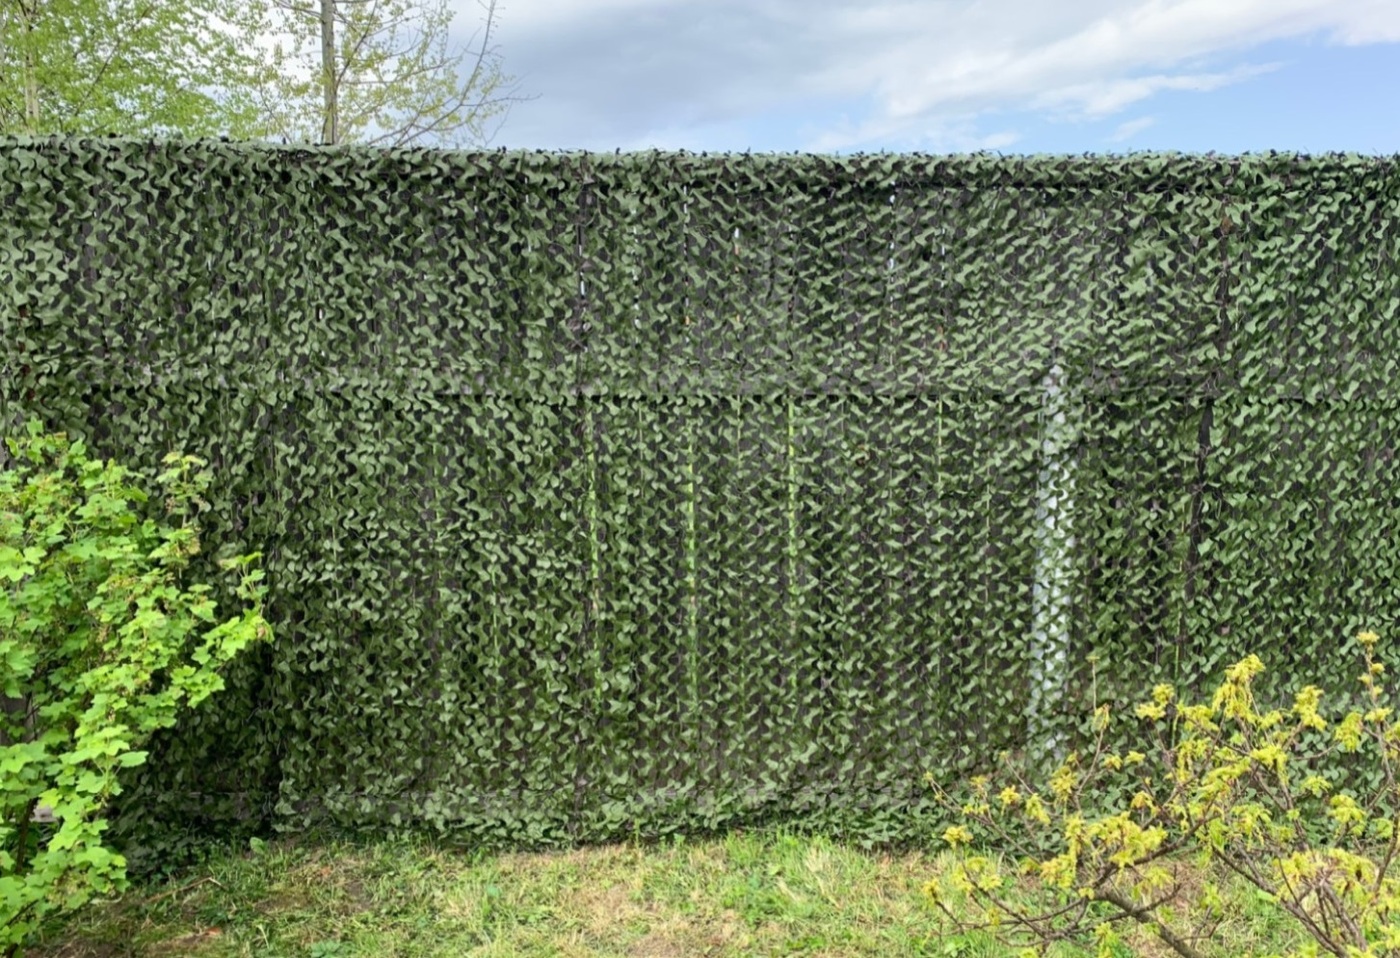 Как задекорировать забор из сетки рабицы? украшаем забор из сетки рабица – 8 вариантов